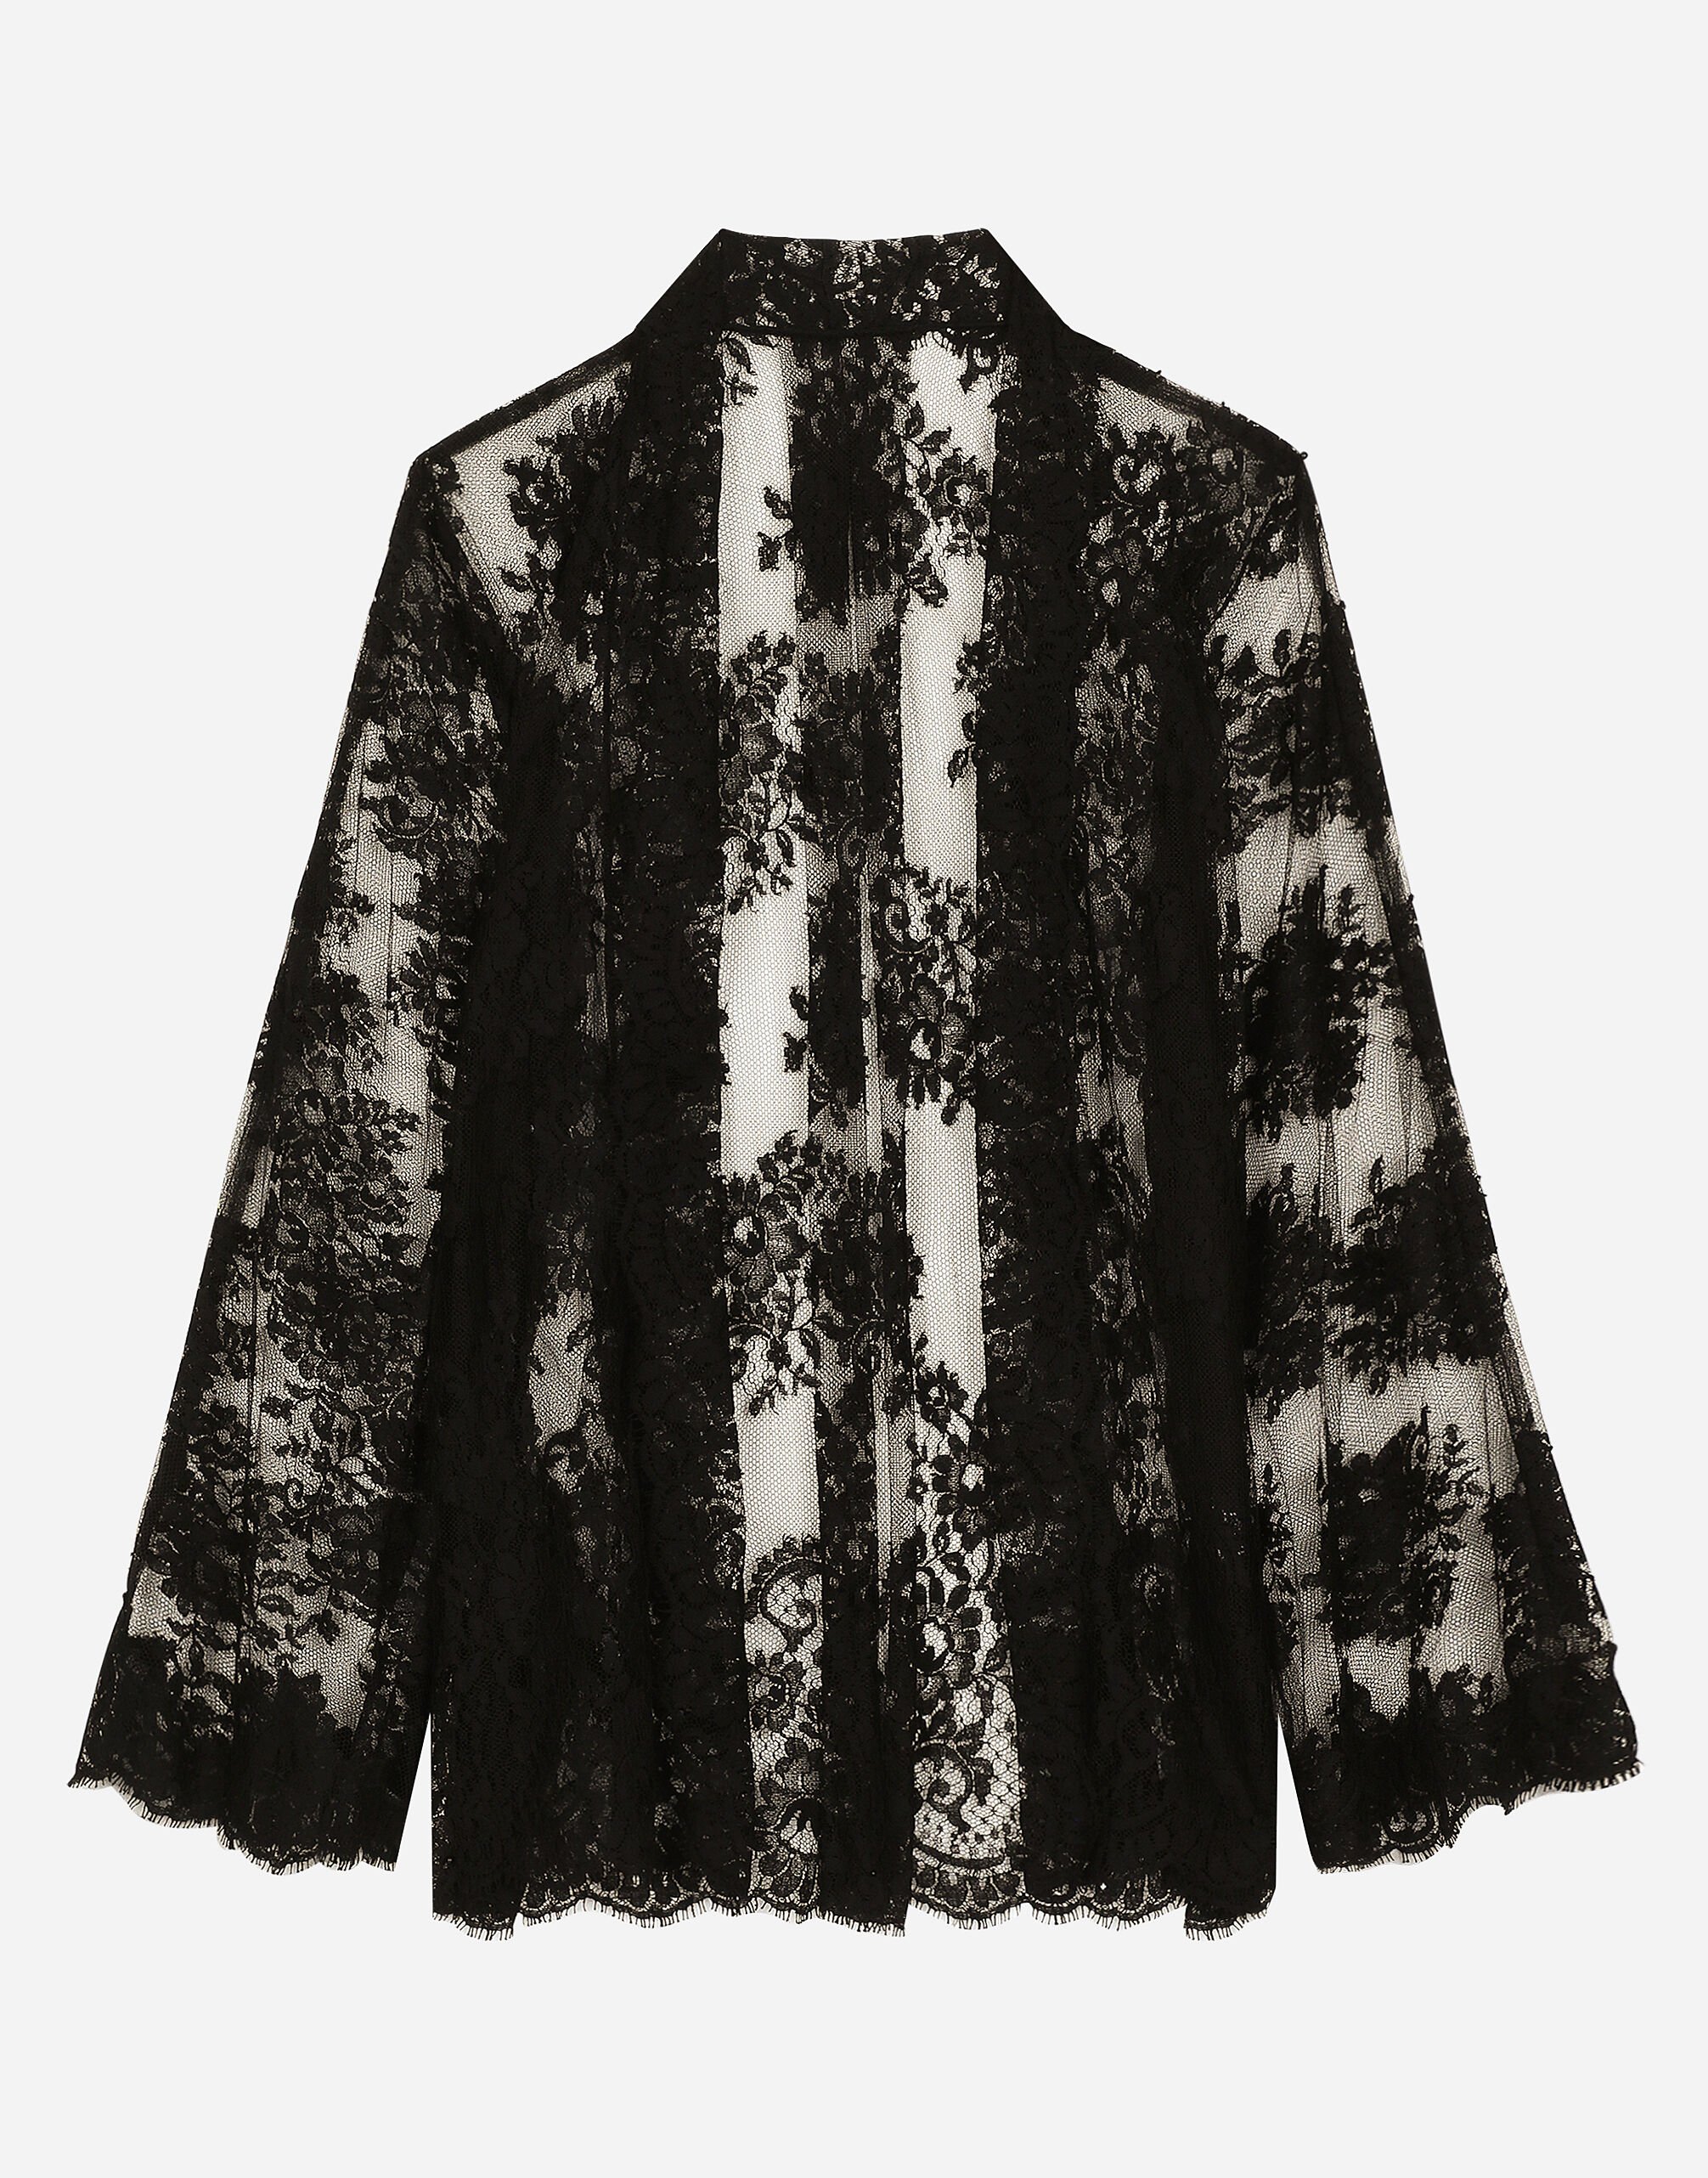 Dolce & Gabbana Floral Chantilly lace kimono shirt Print F6GADTHS1KD